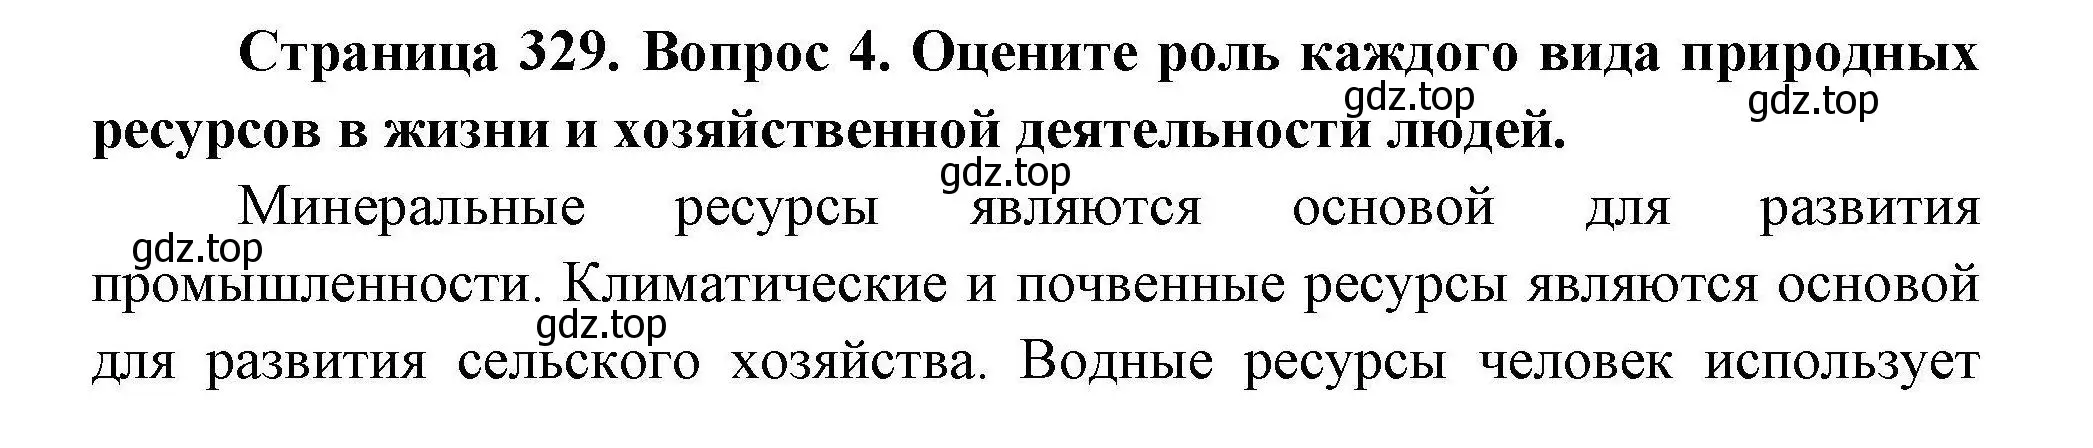 Решение номер 4 (страница 329) гдз по географии 7 класс Коринская, Душина, учебник